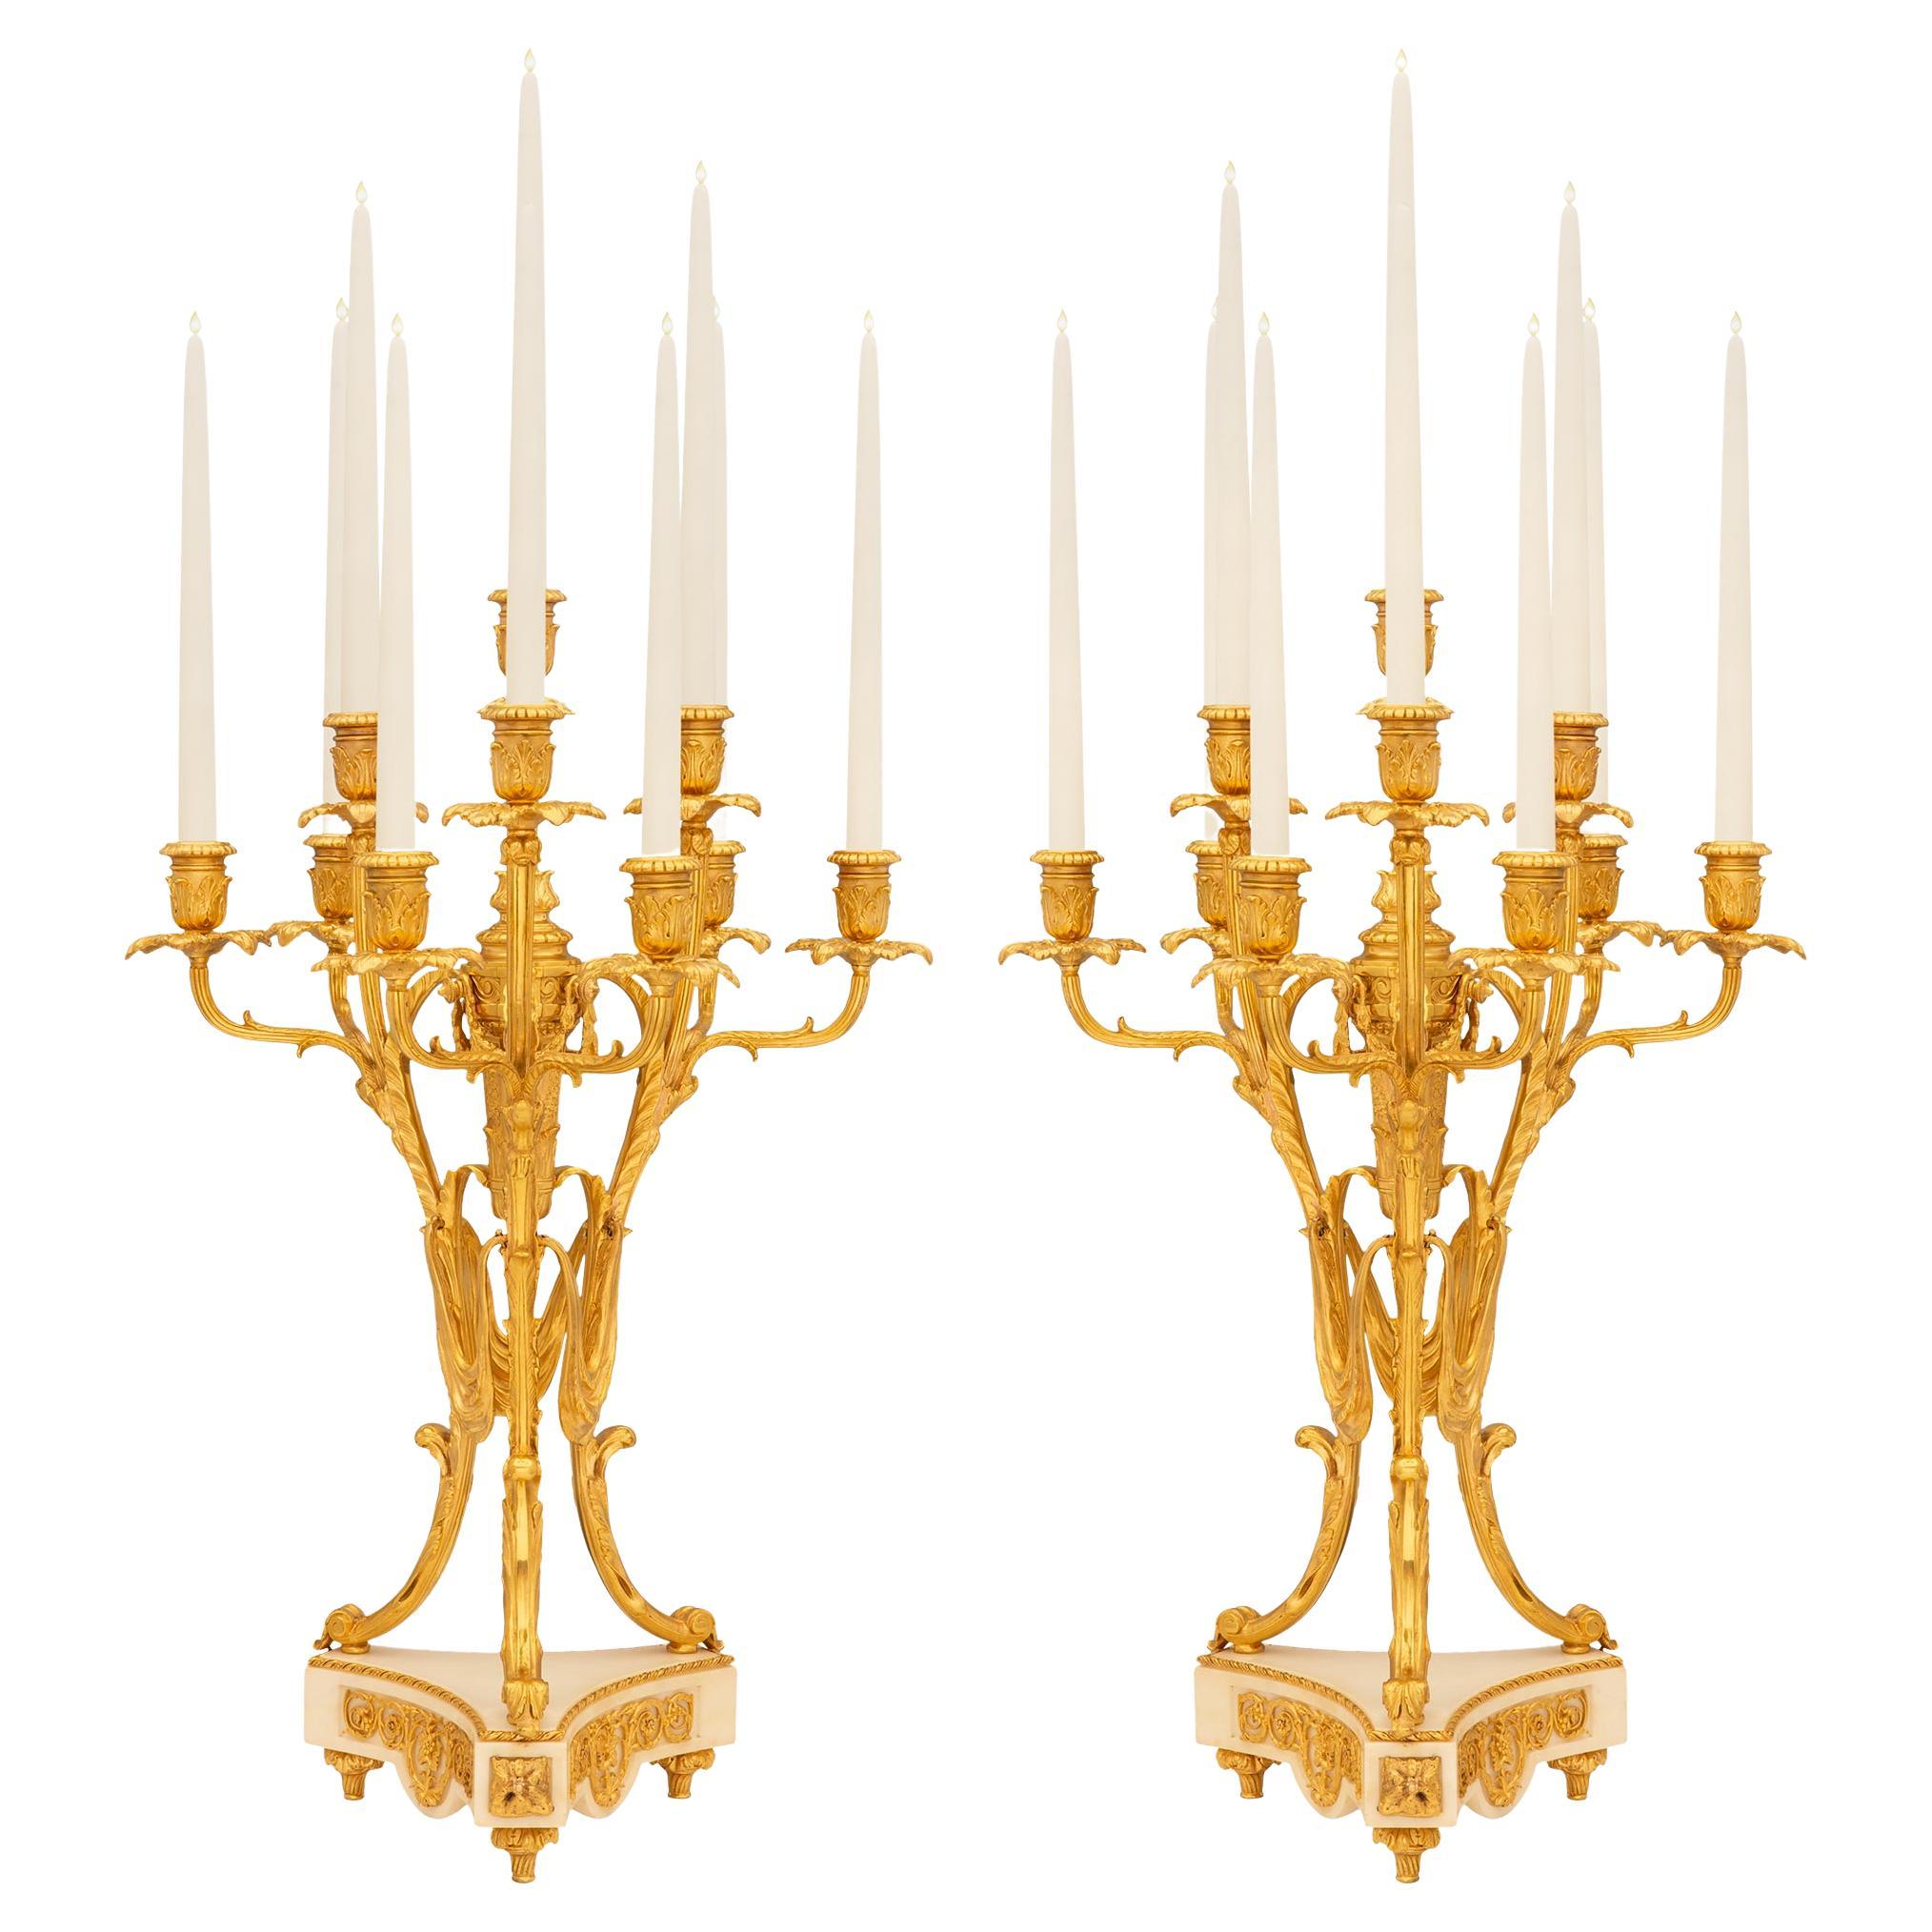 Paire de candélabres en bronze doré et marbre de la période Belle Poque du 19ème siècle français